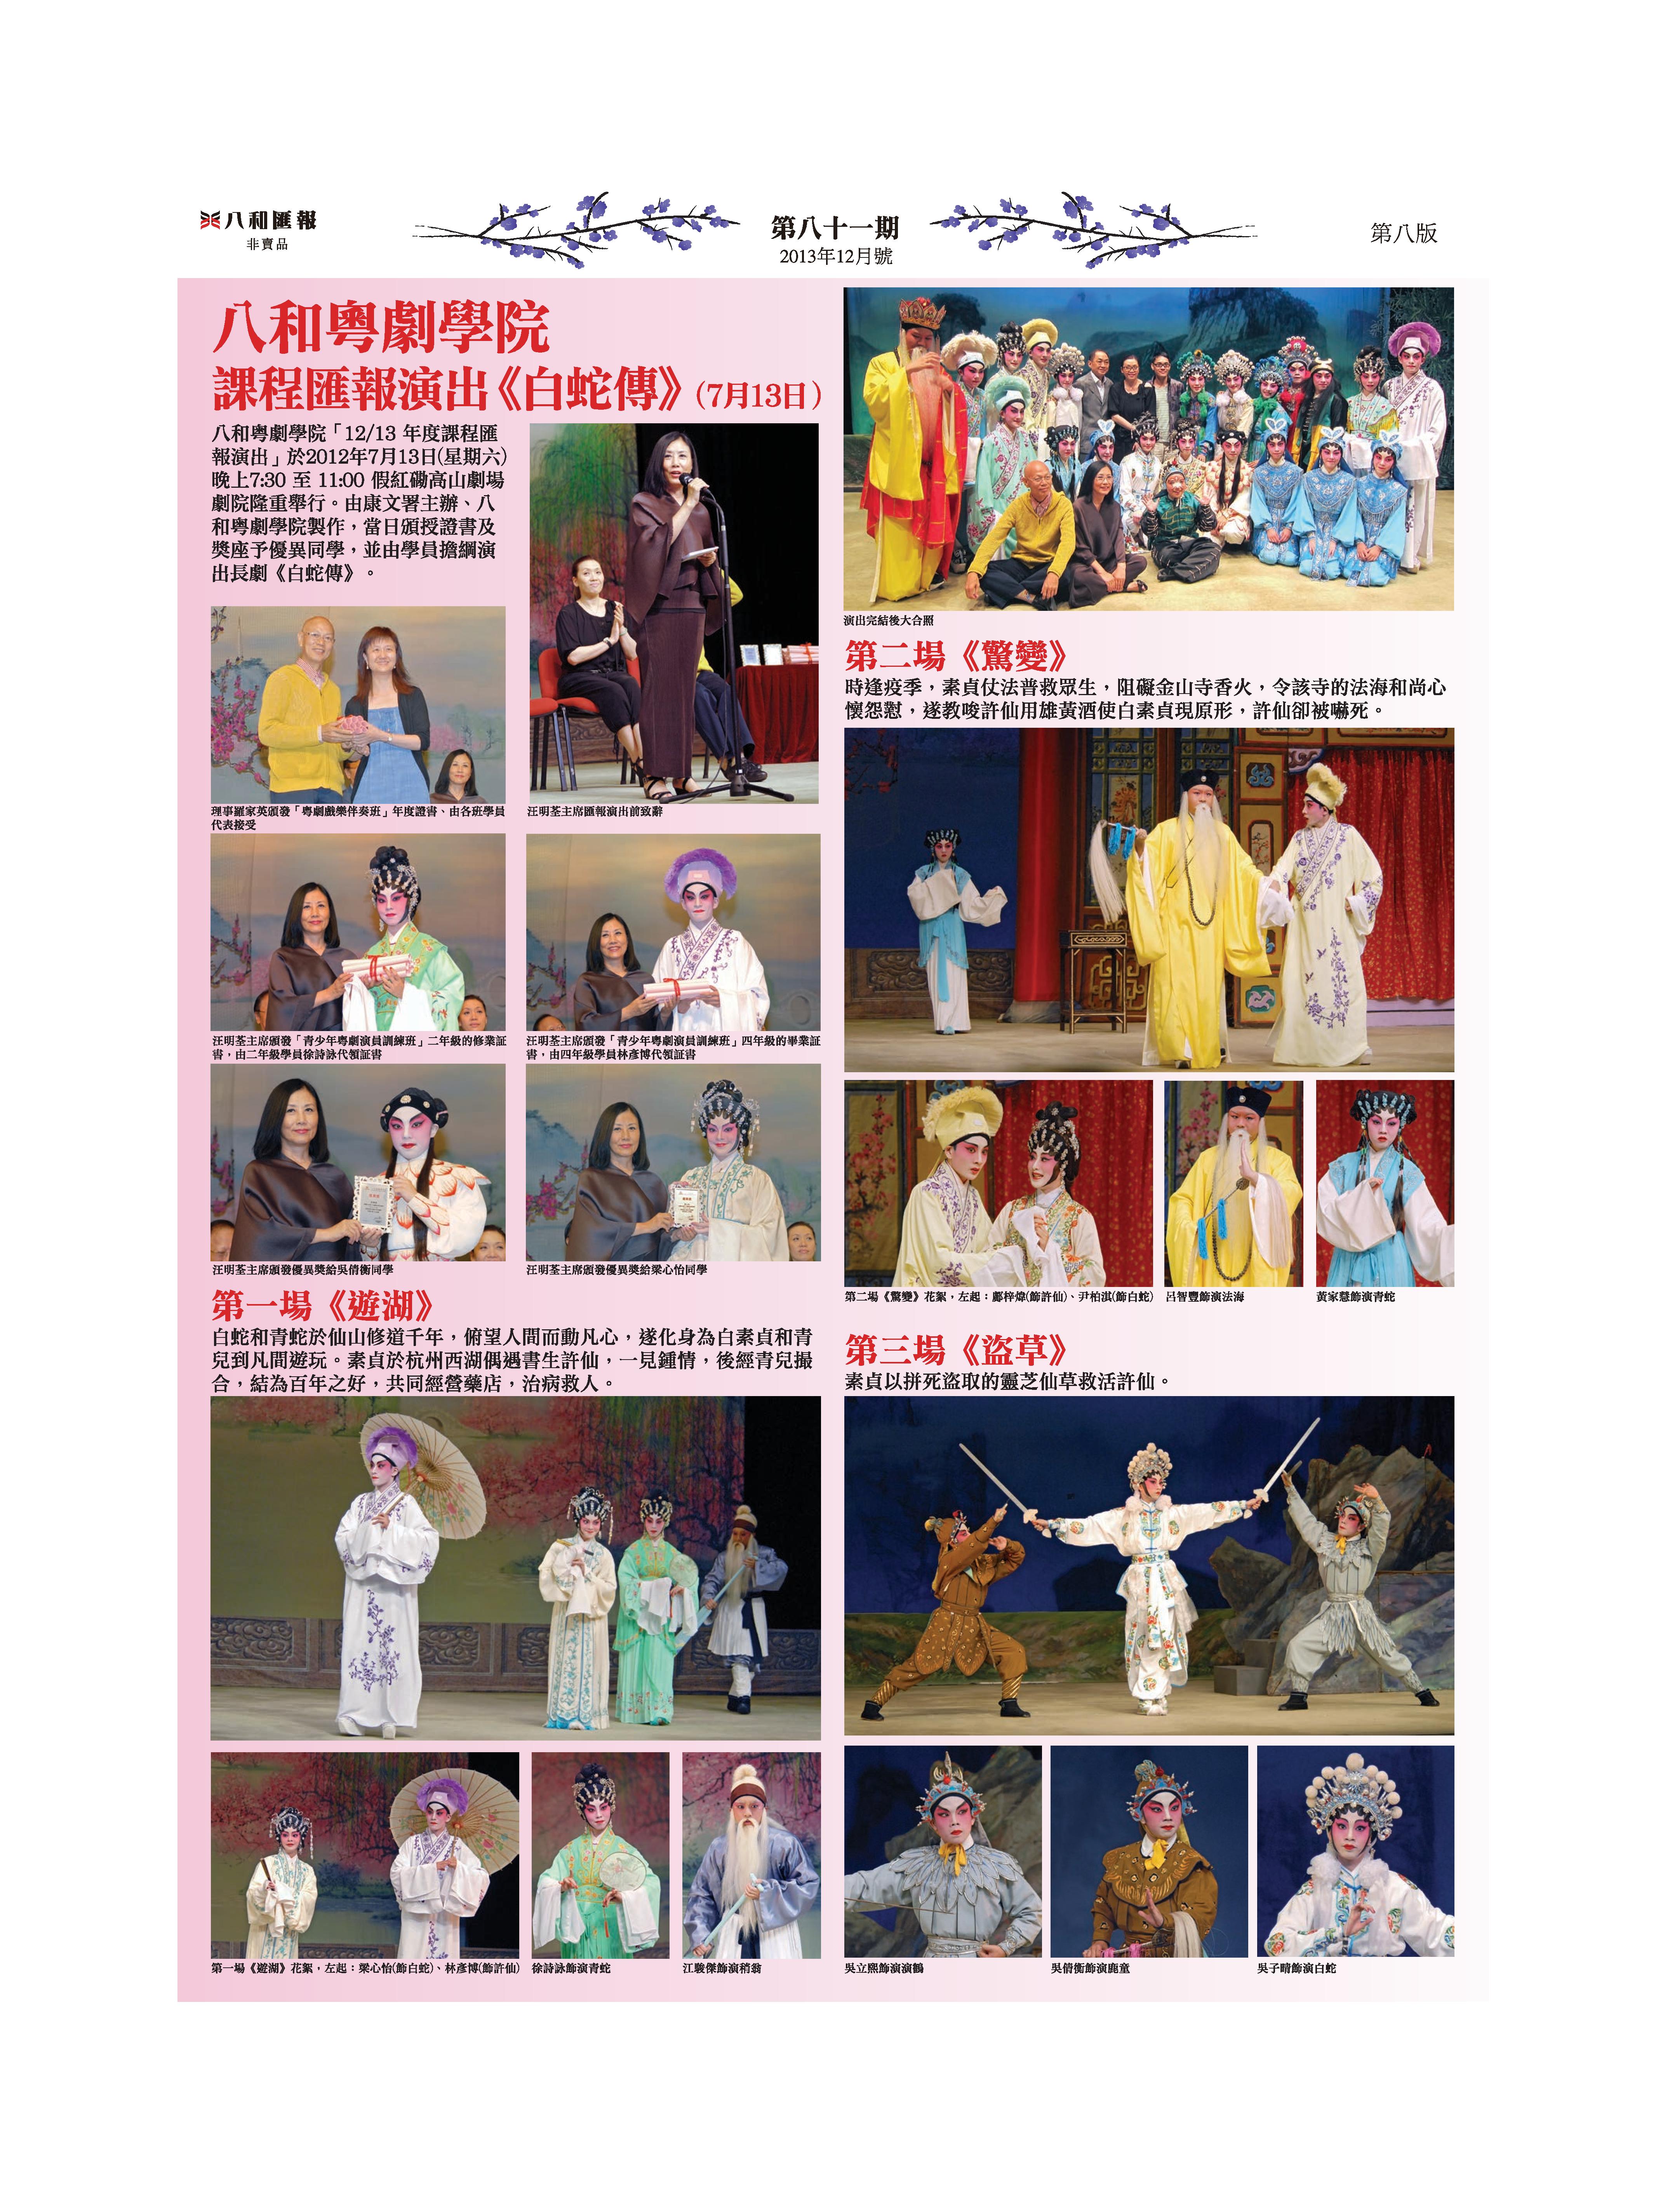 八和粤劇學院課程匯報演出《白蛇傳》演出花絮：《遊湖》、《驚變》、《盜草》